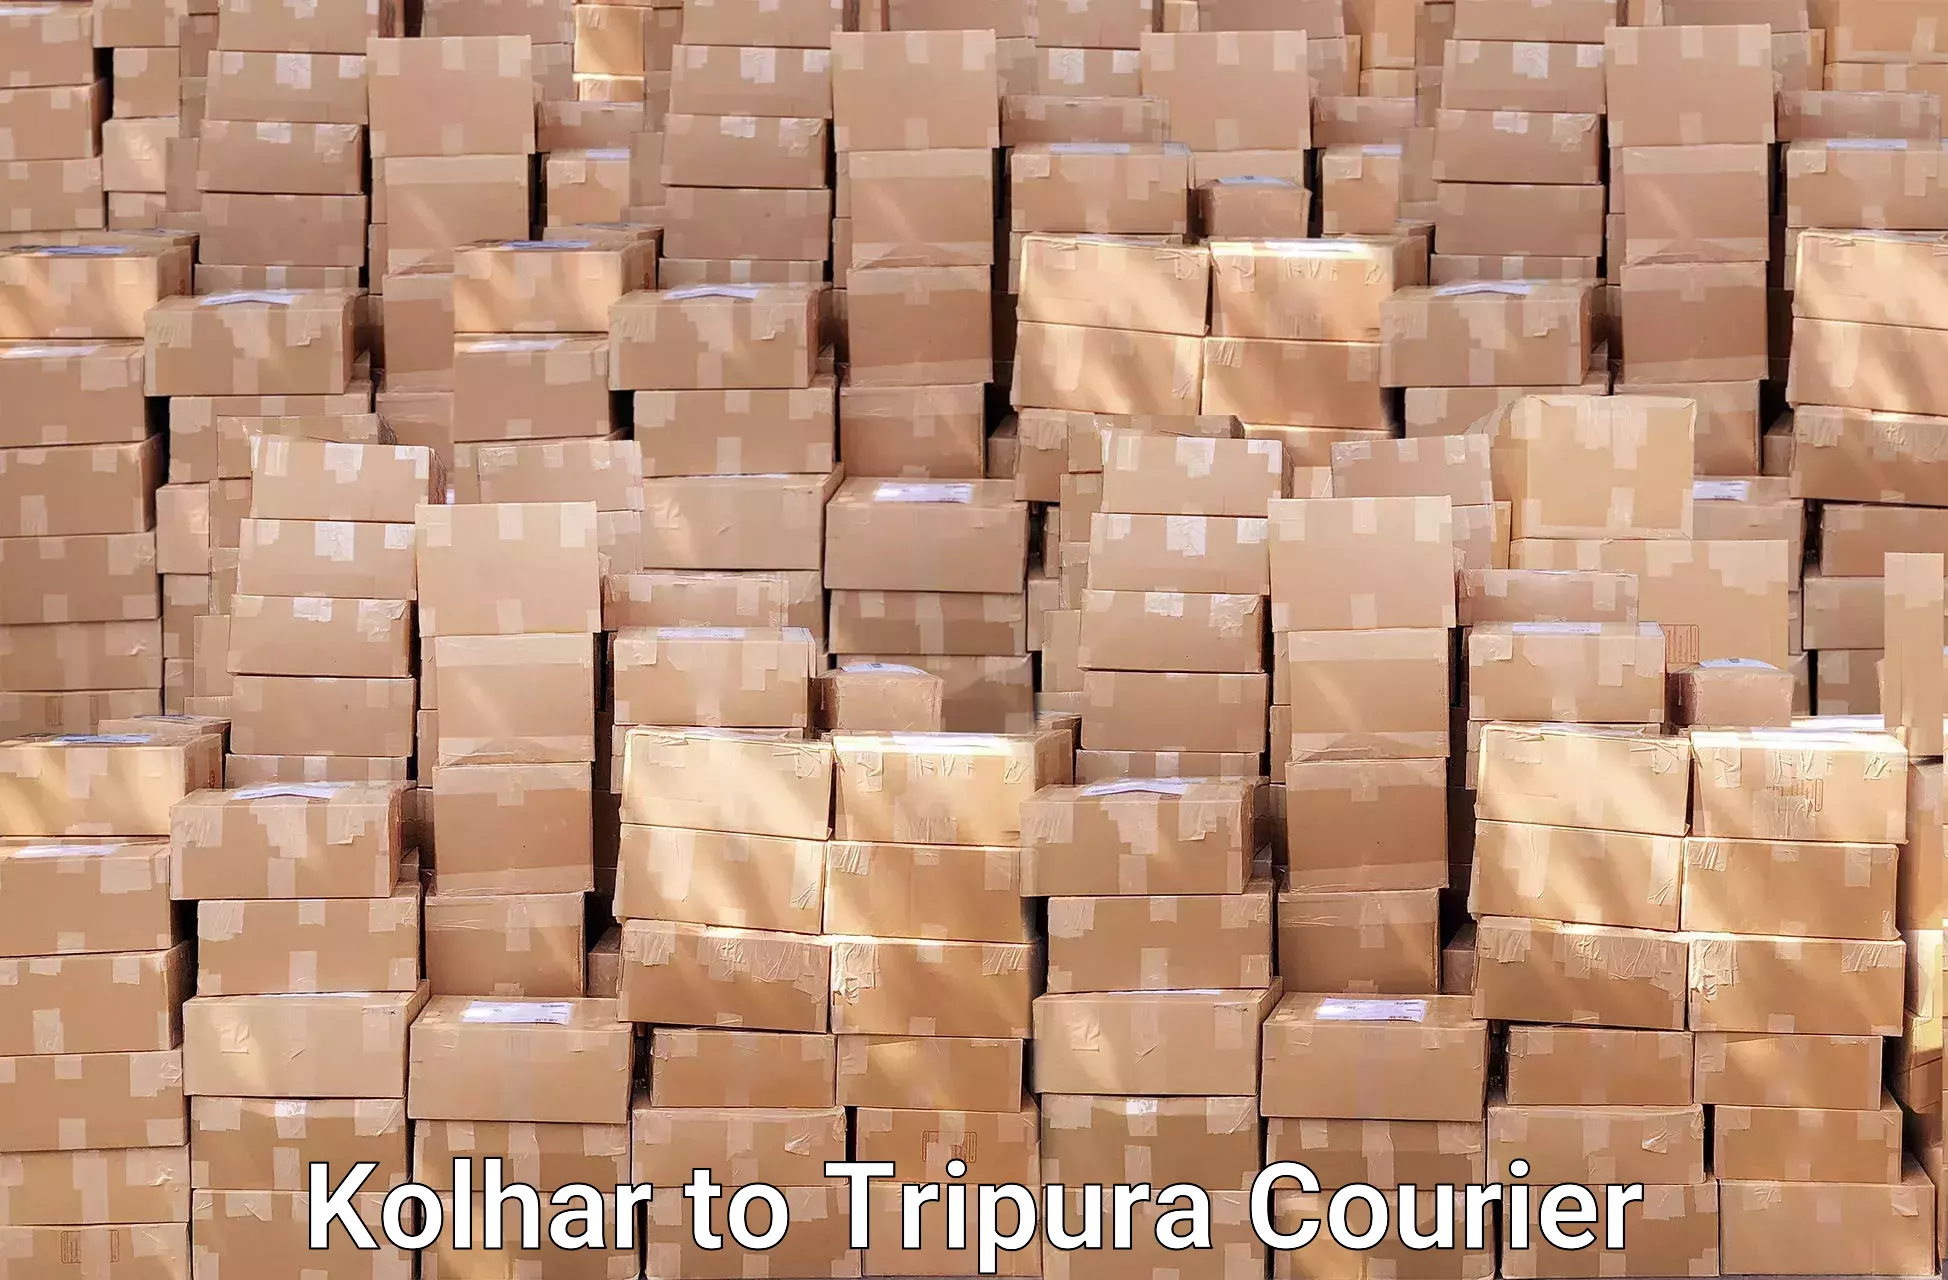 Skilled furniture transporters Kolhar to West Tripura